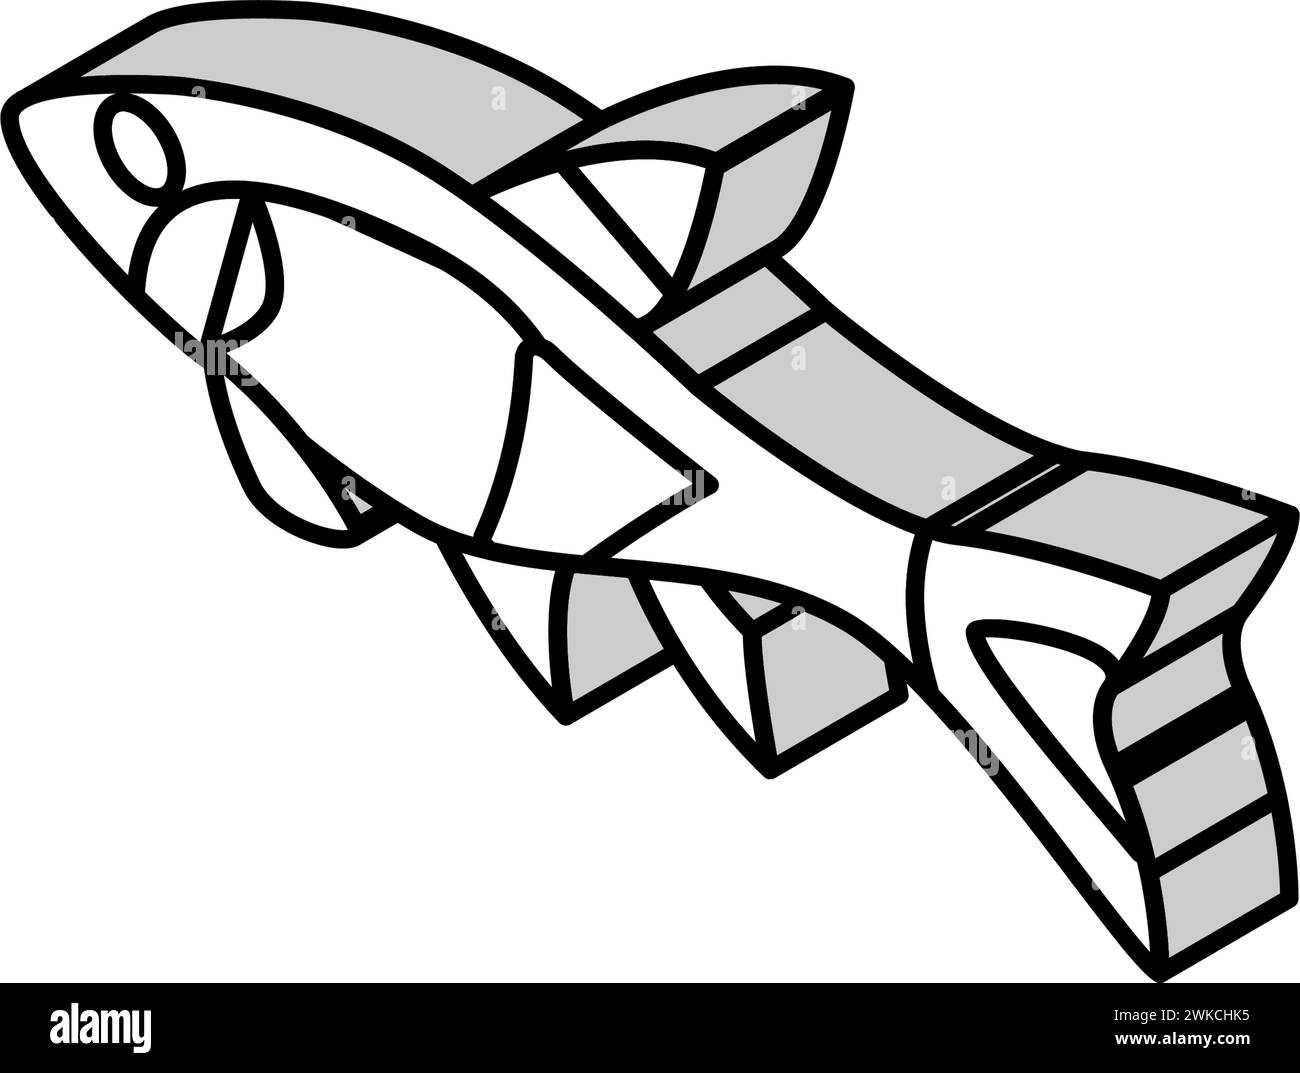 rasbora fish isometric icon vector illustration Stock Vector